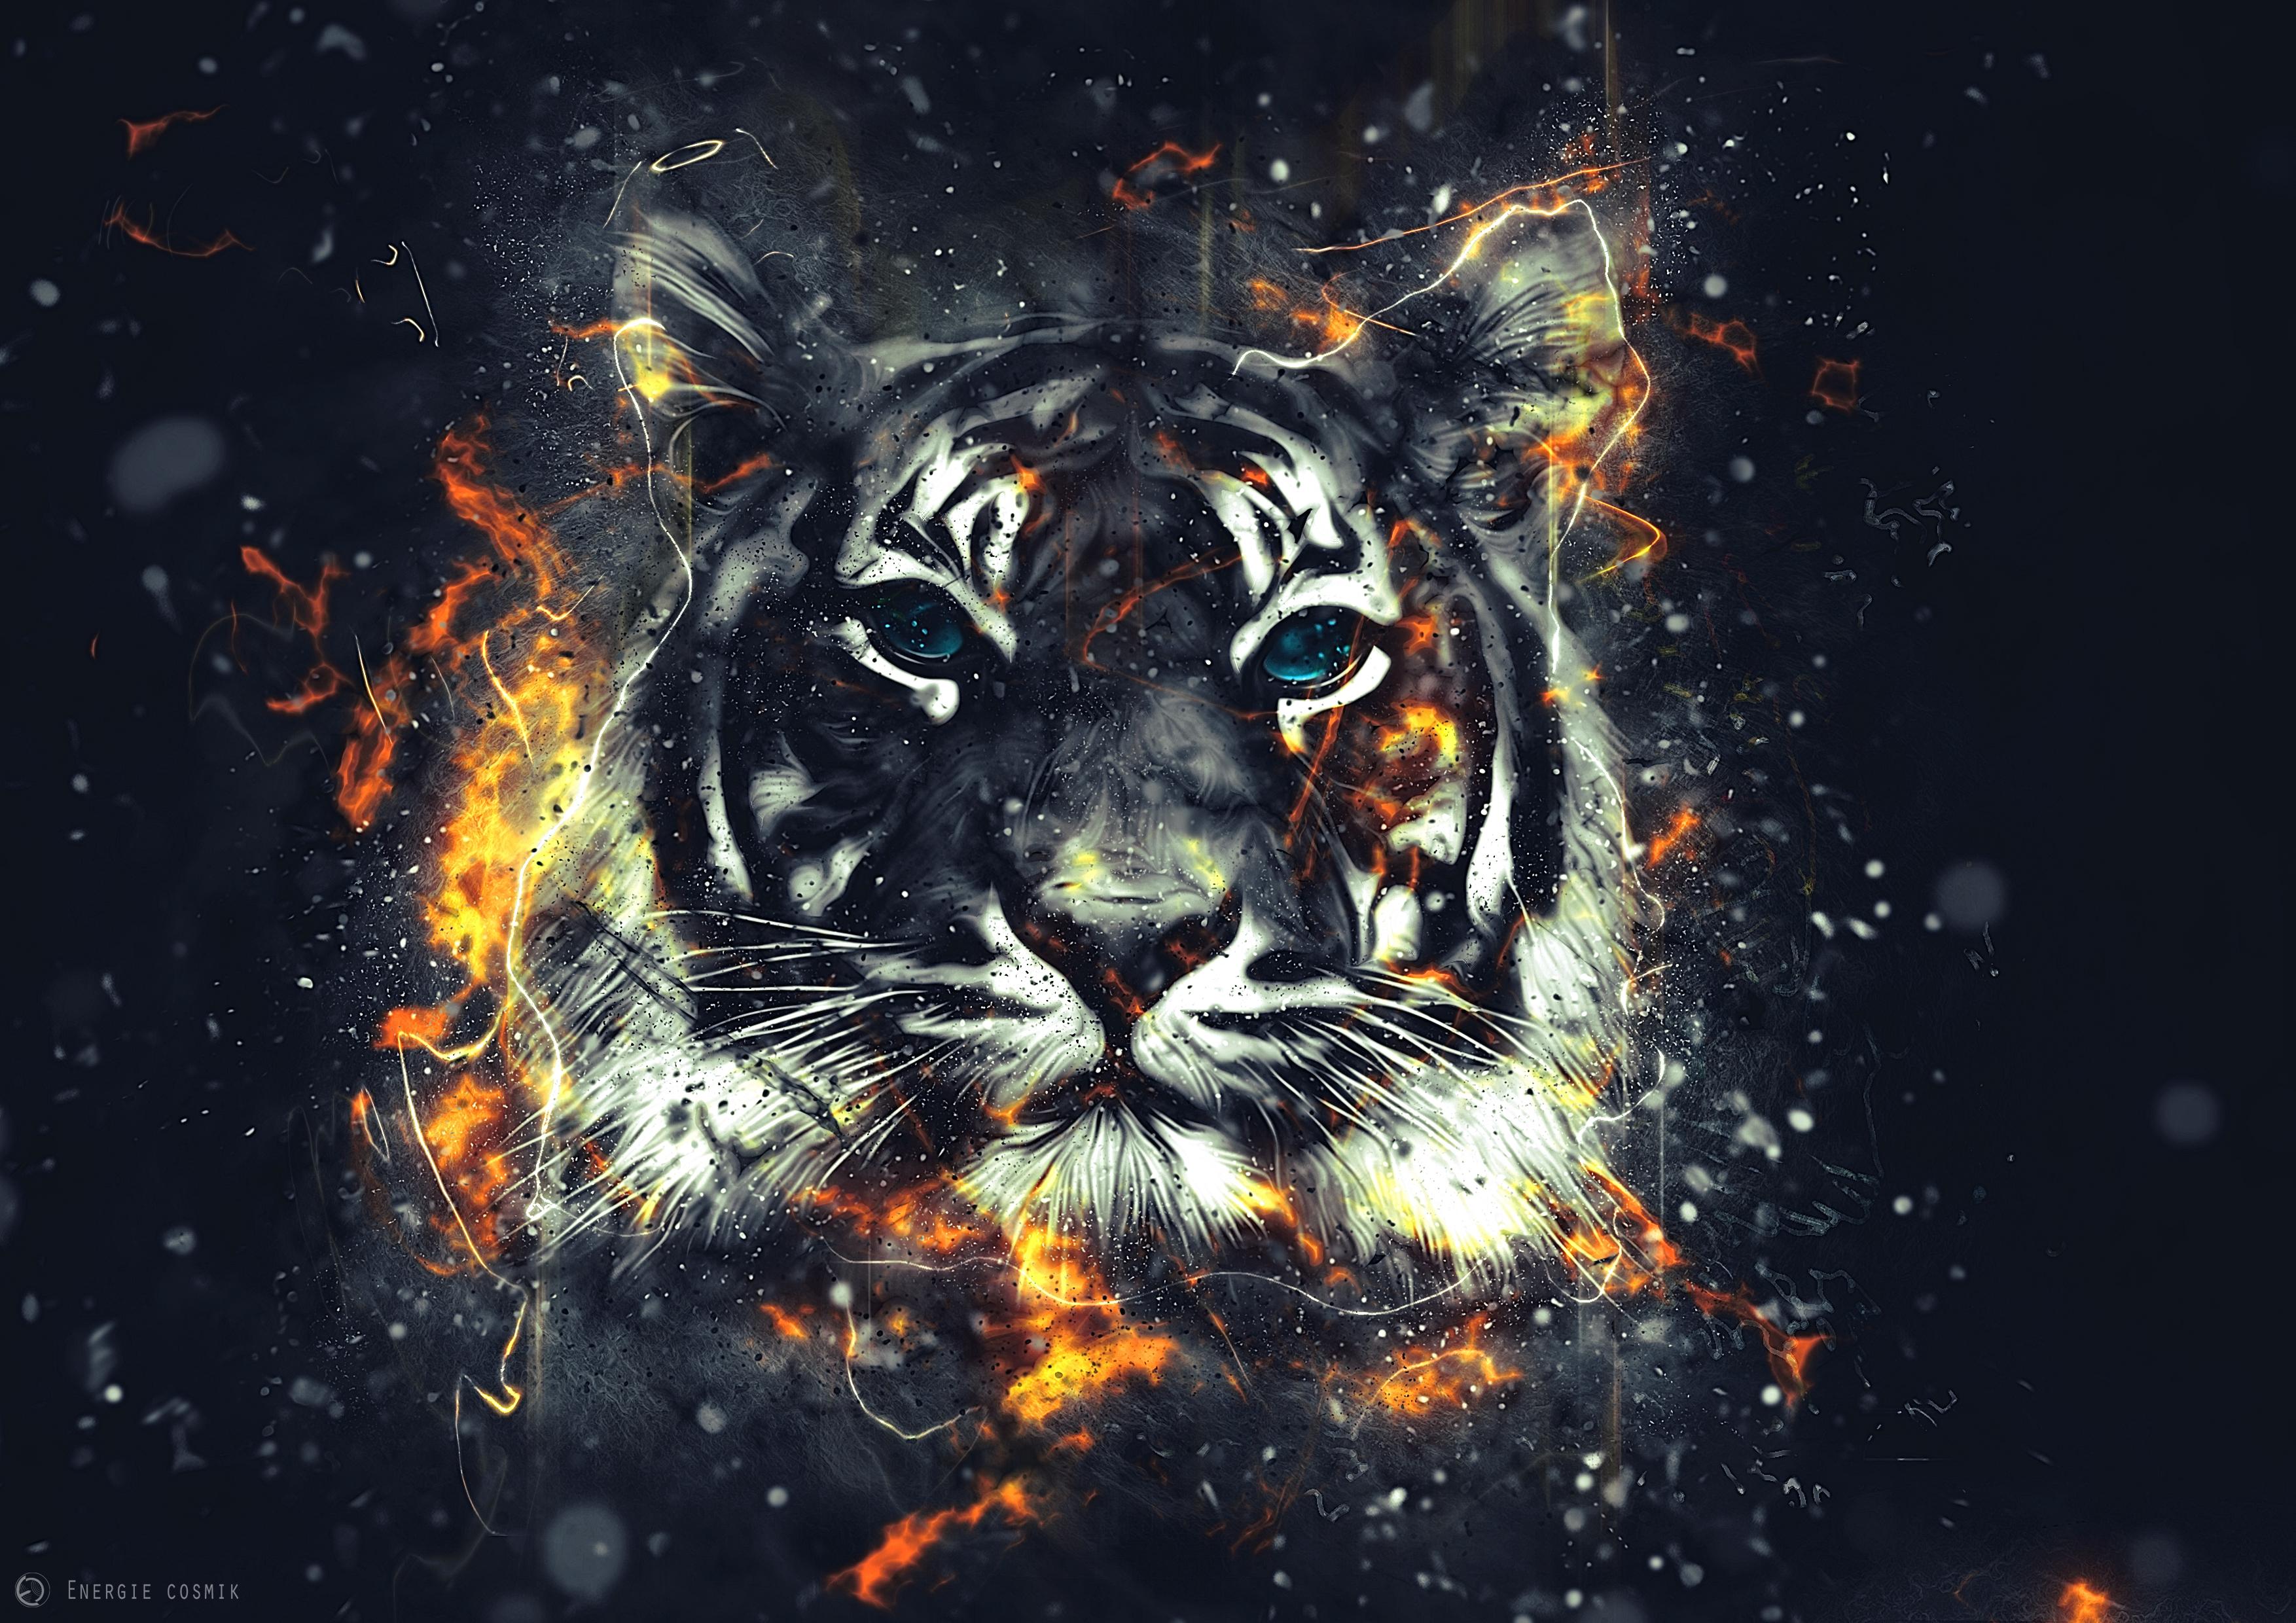 117-1175747_tiger-sparks-art-flash-tiger-sparks